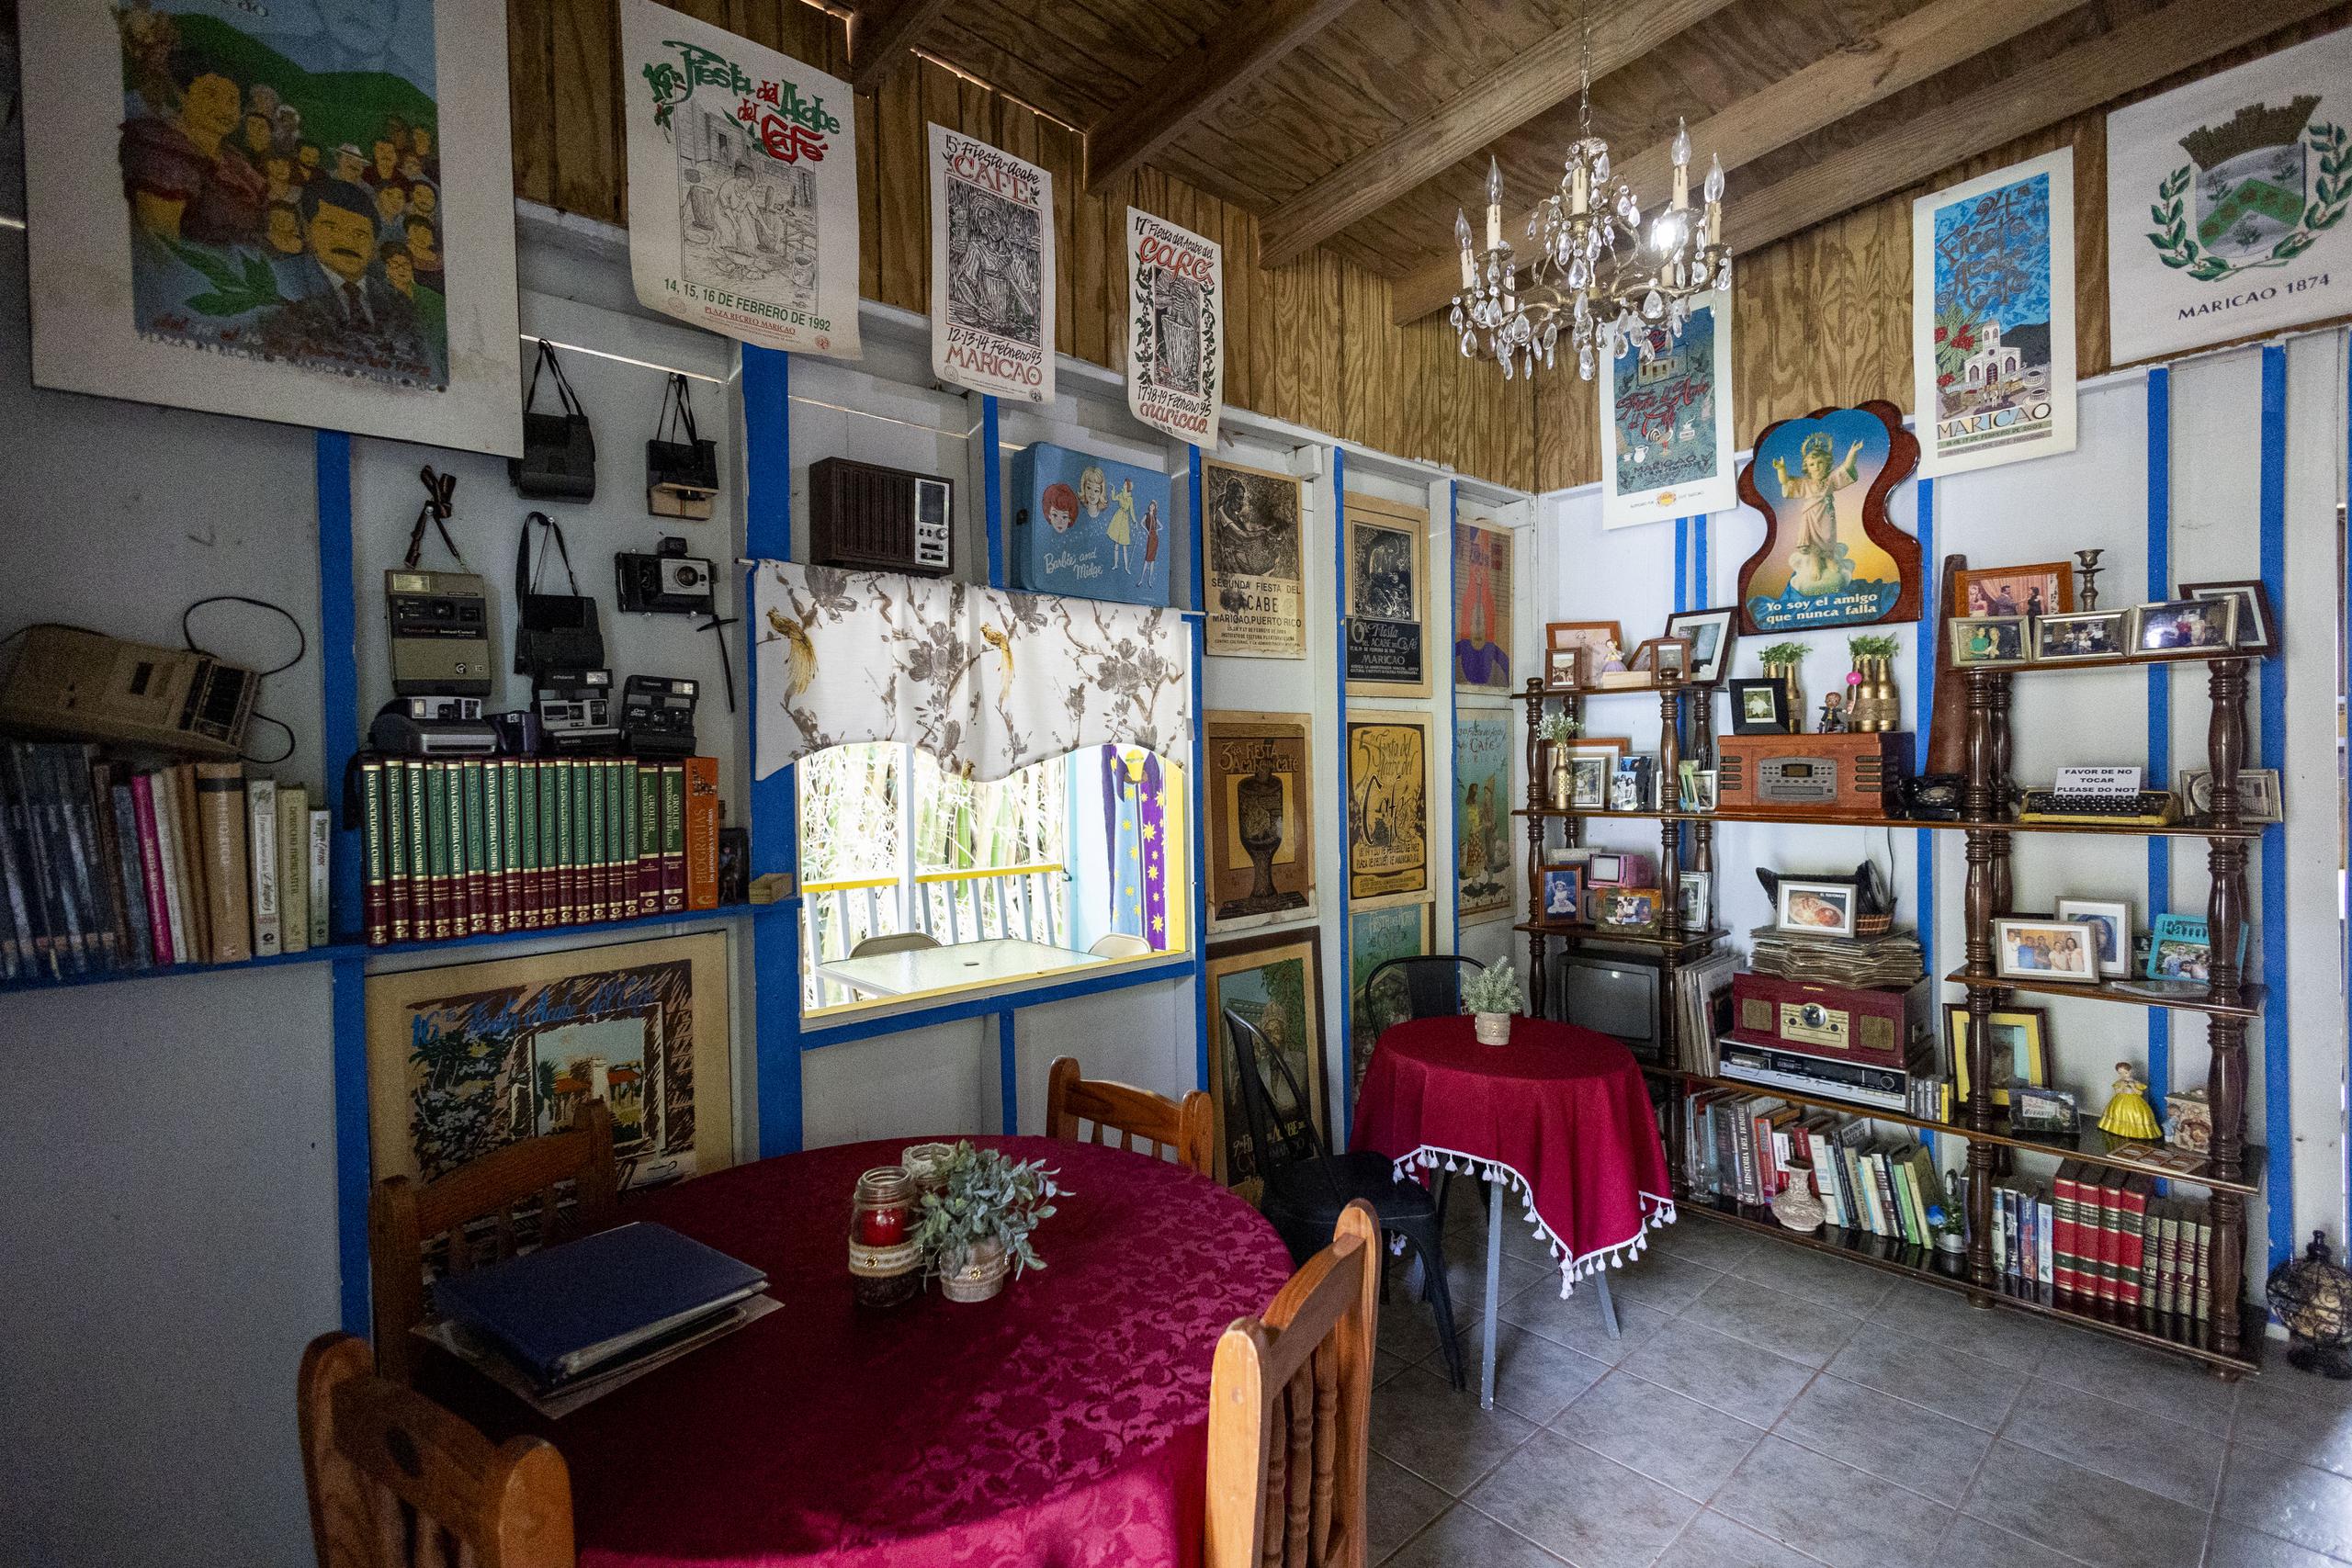 El lugar, ubicado en el barrio Maricao Afuera, exhibe artículos antiguos como radios, maquinillas, tocadiscos, enciclopedias, discos de vinilo y hasta cartuchos de música 8-track.